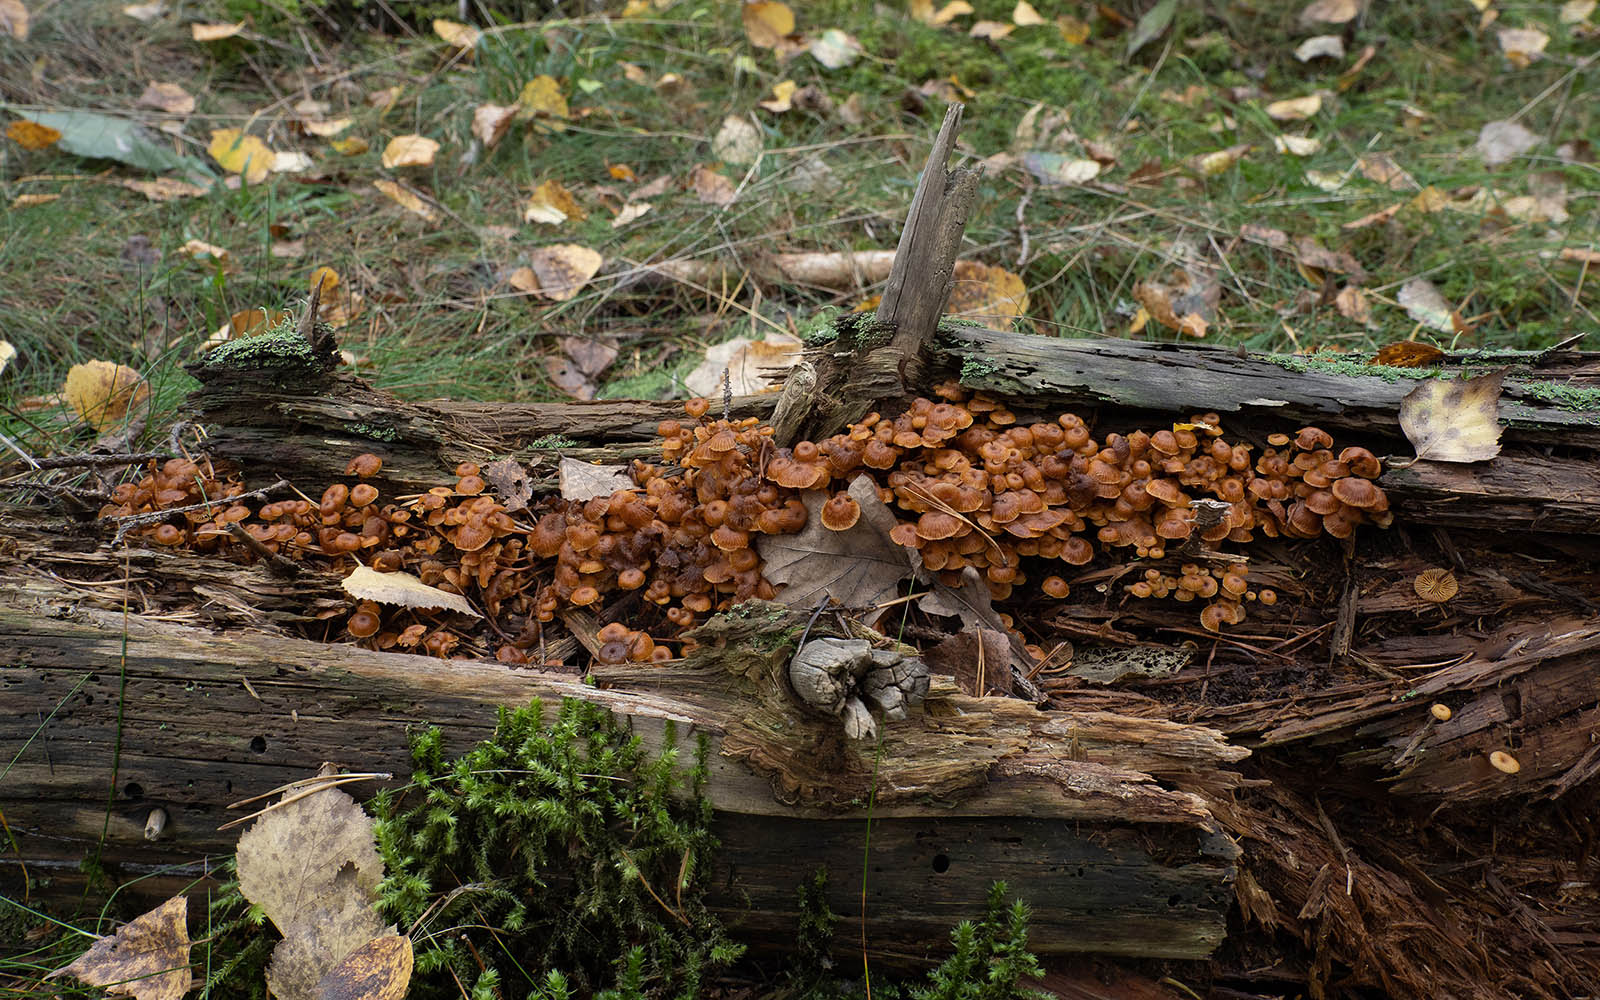 Ксеромфалина колокольчатая (Xeromphalina campanella) в природном парке G?rv?ln, Стокгольм, октябрь 2020 года. Автор фото: Сутормина Марина